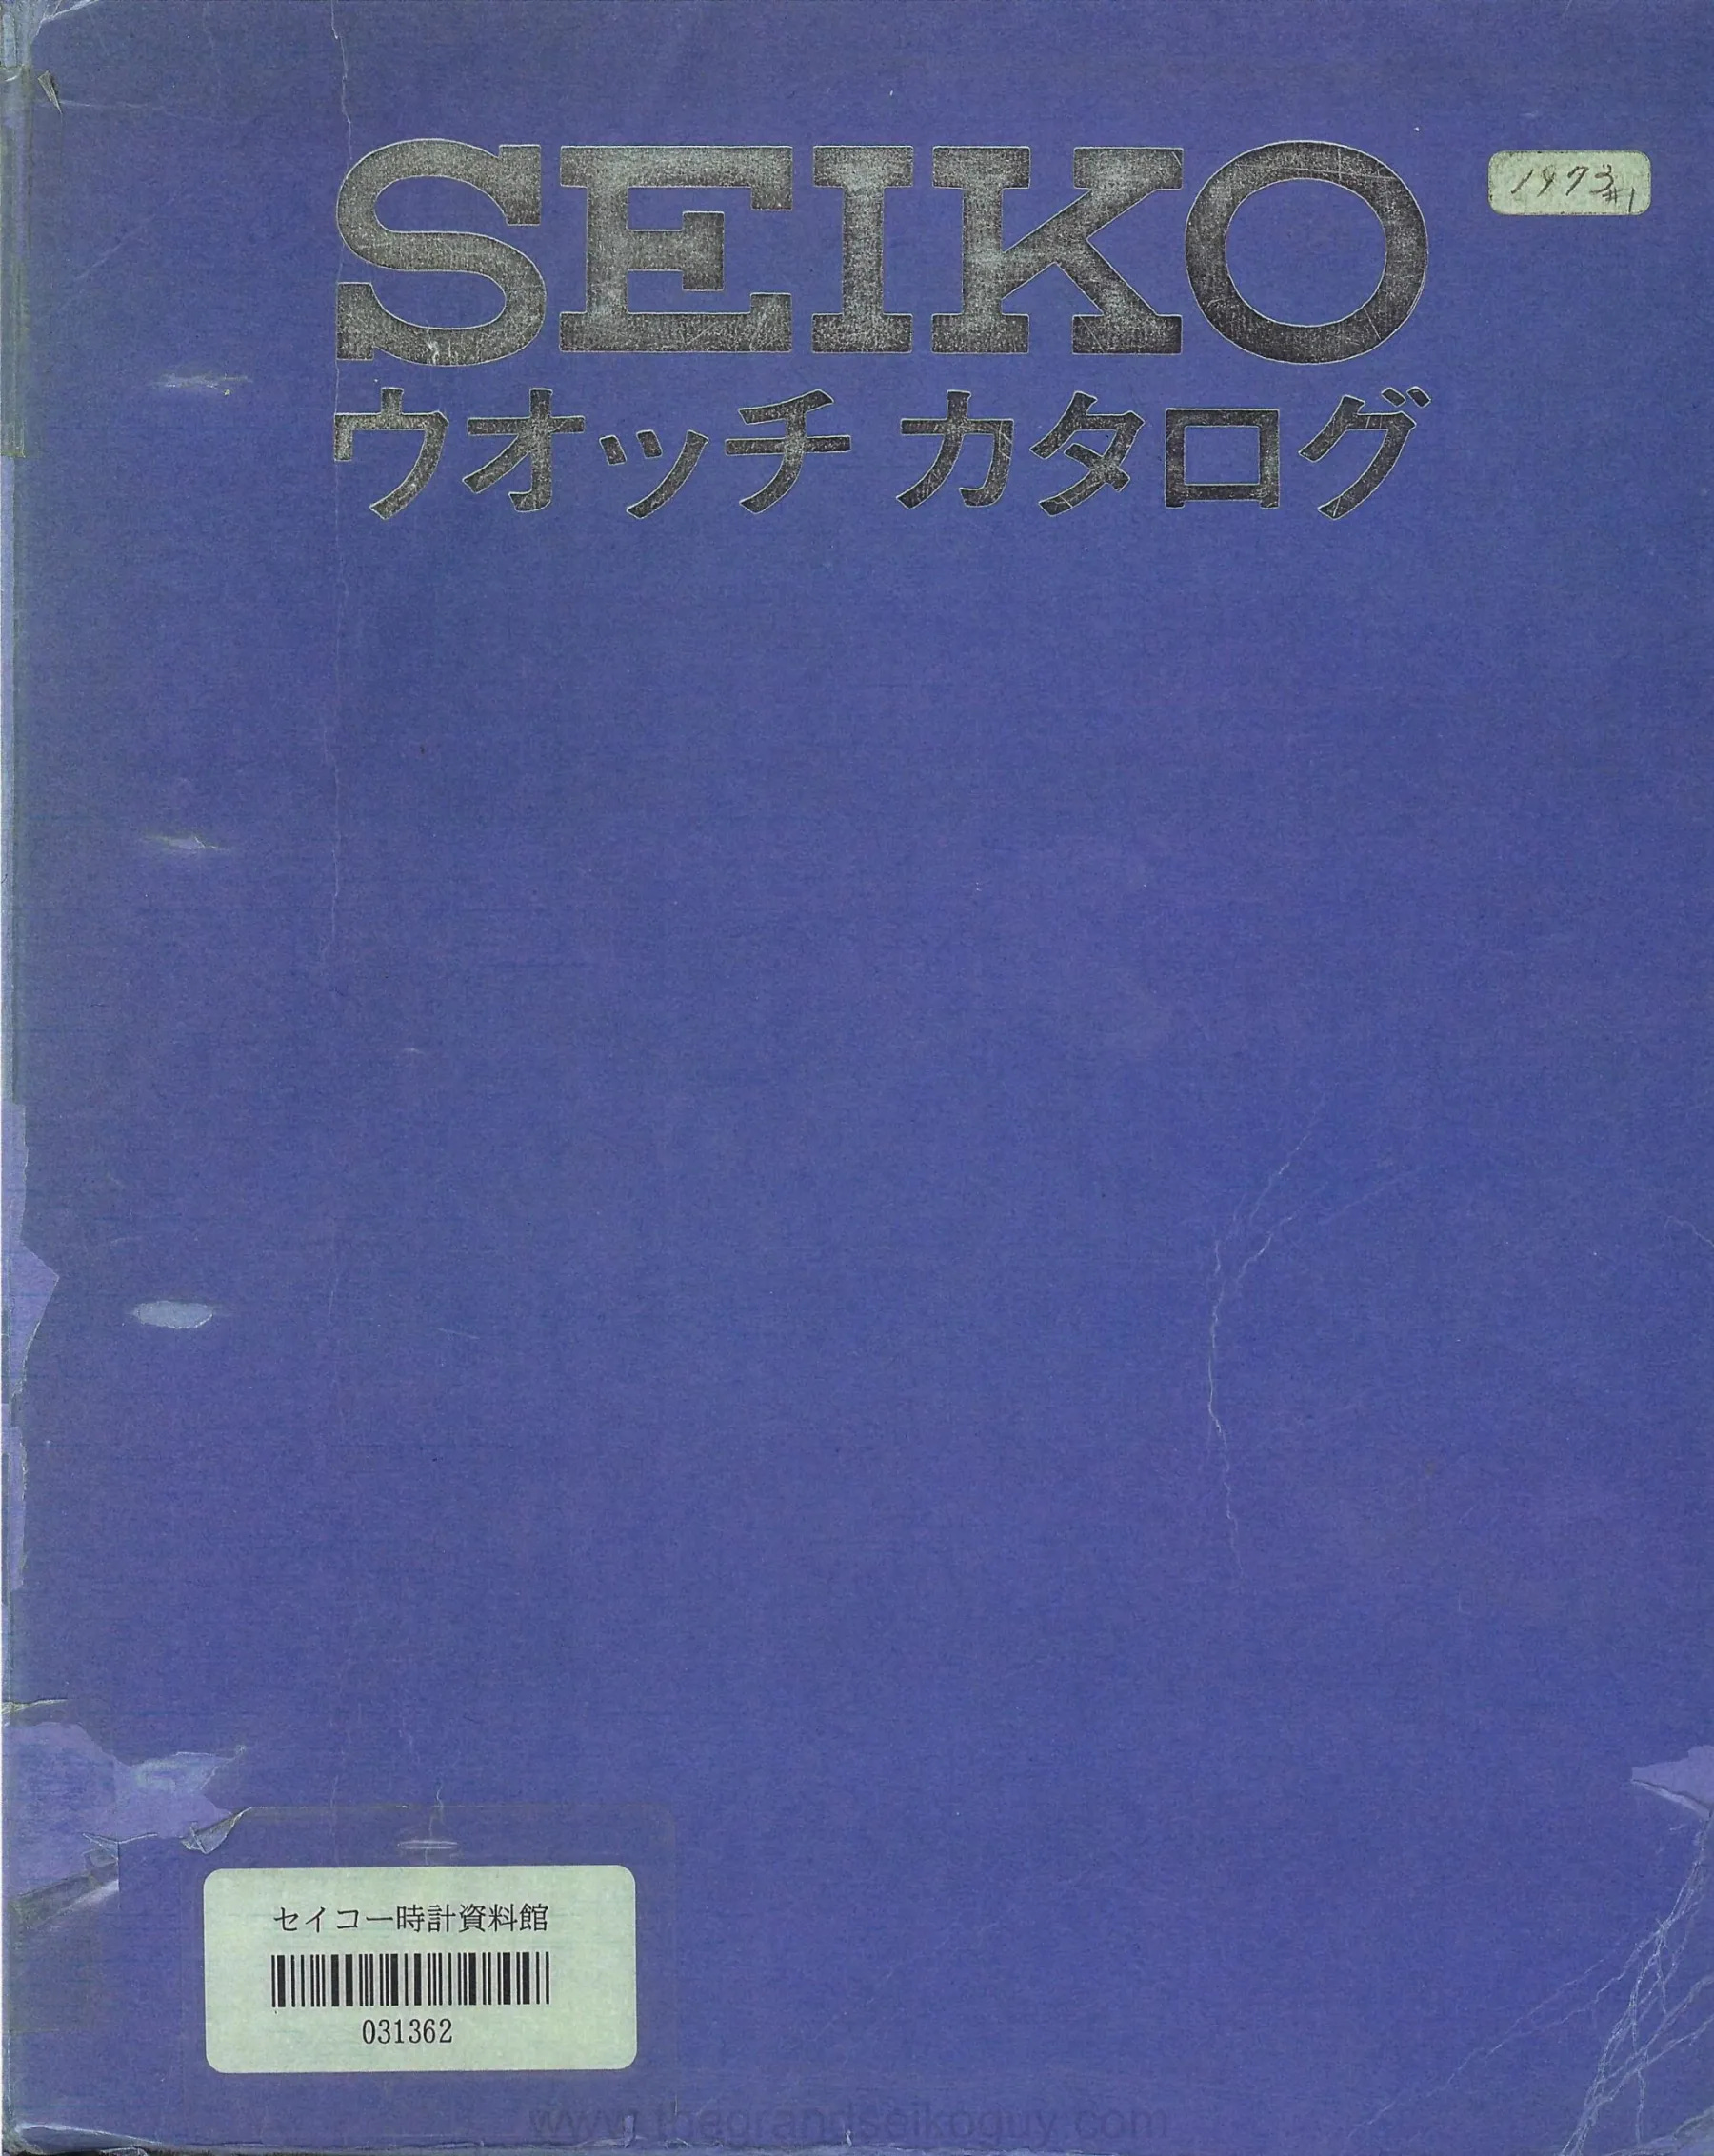 The Seiko 1973 Catalogue Volume 1 - the Grand Seiko guy